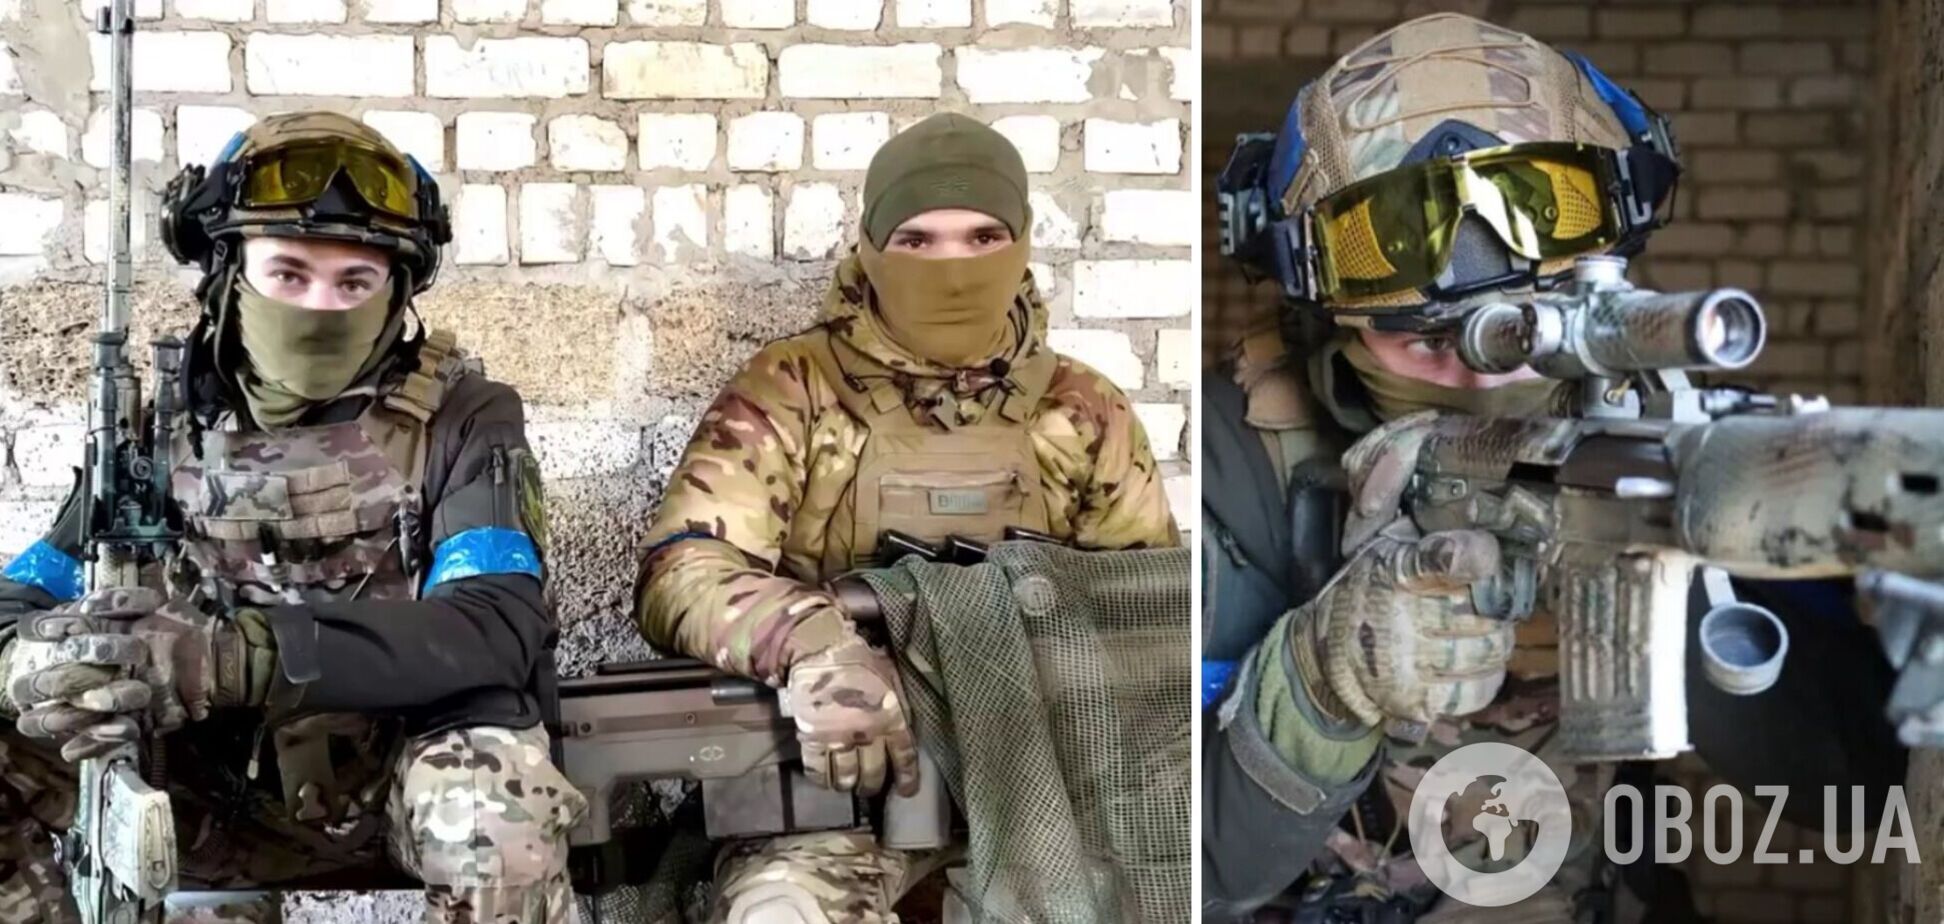 Українські снайпери 'Опер' та 'Кузя' показали, як разом полюють на окупантів: відео